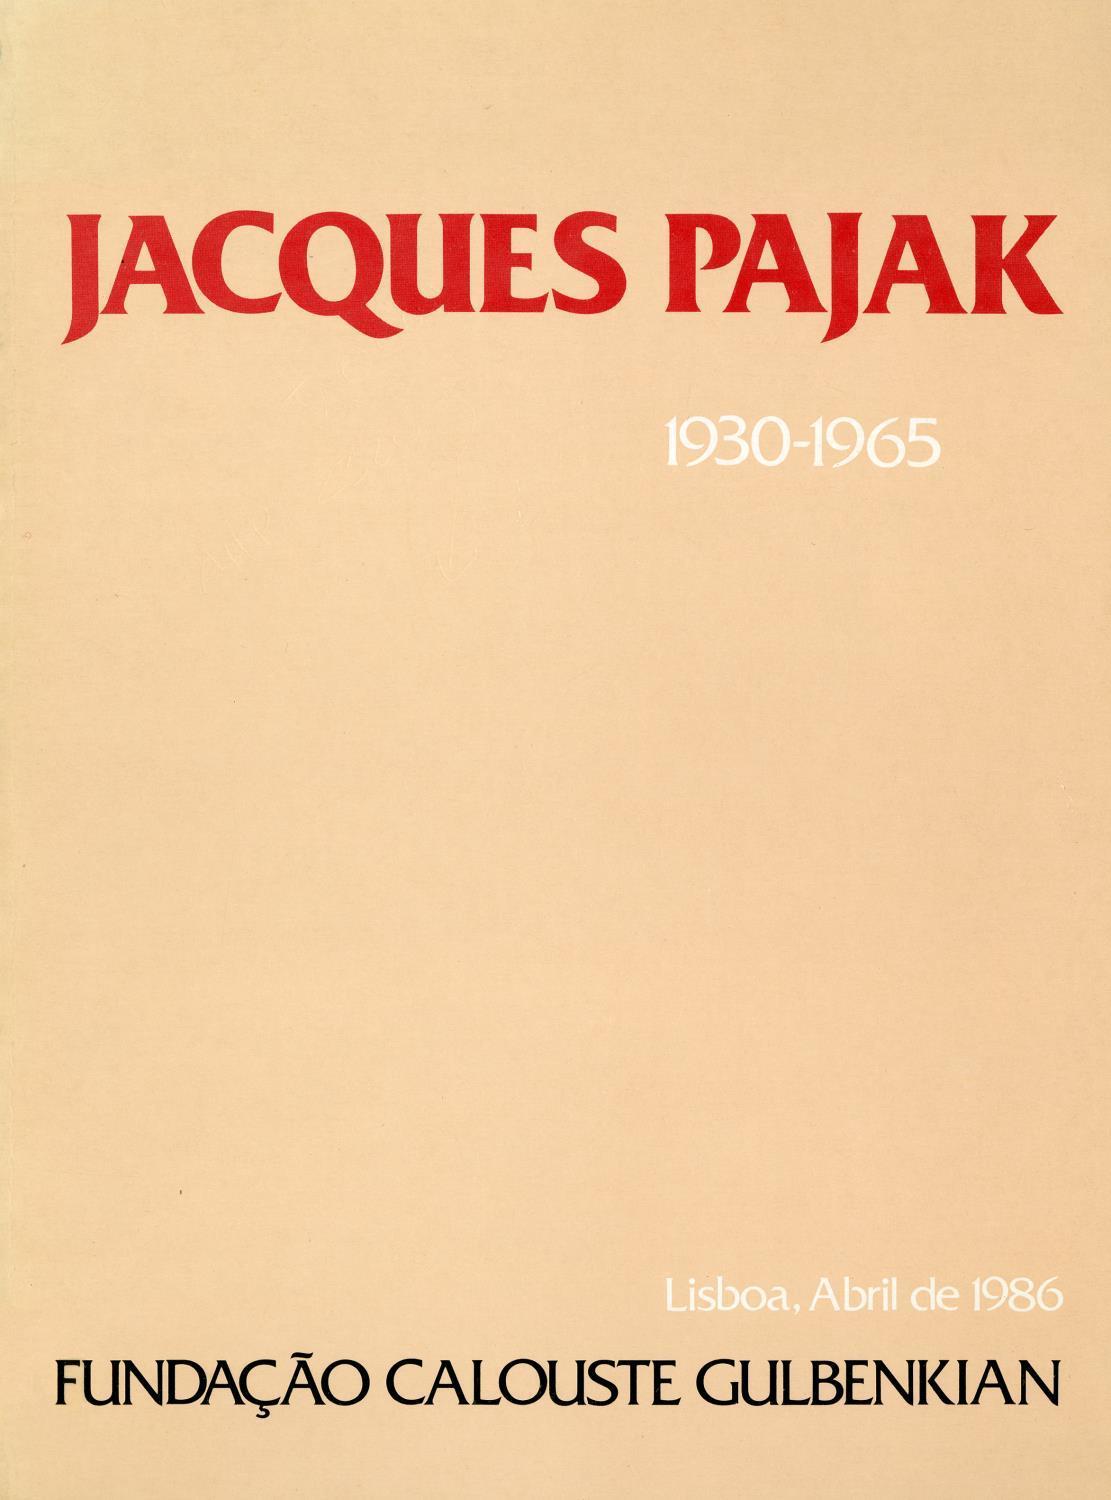 Jacques Pajak (1930 – 1965)